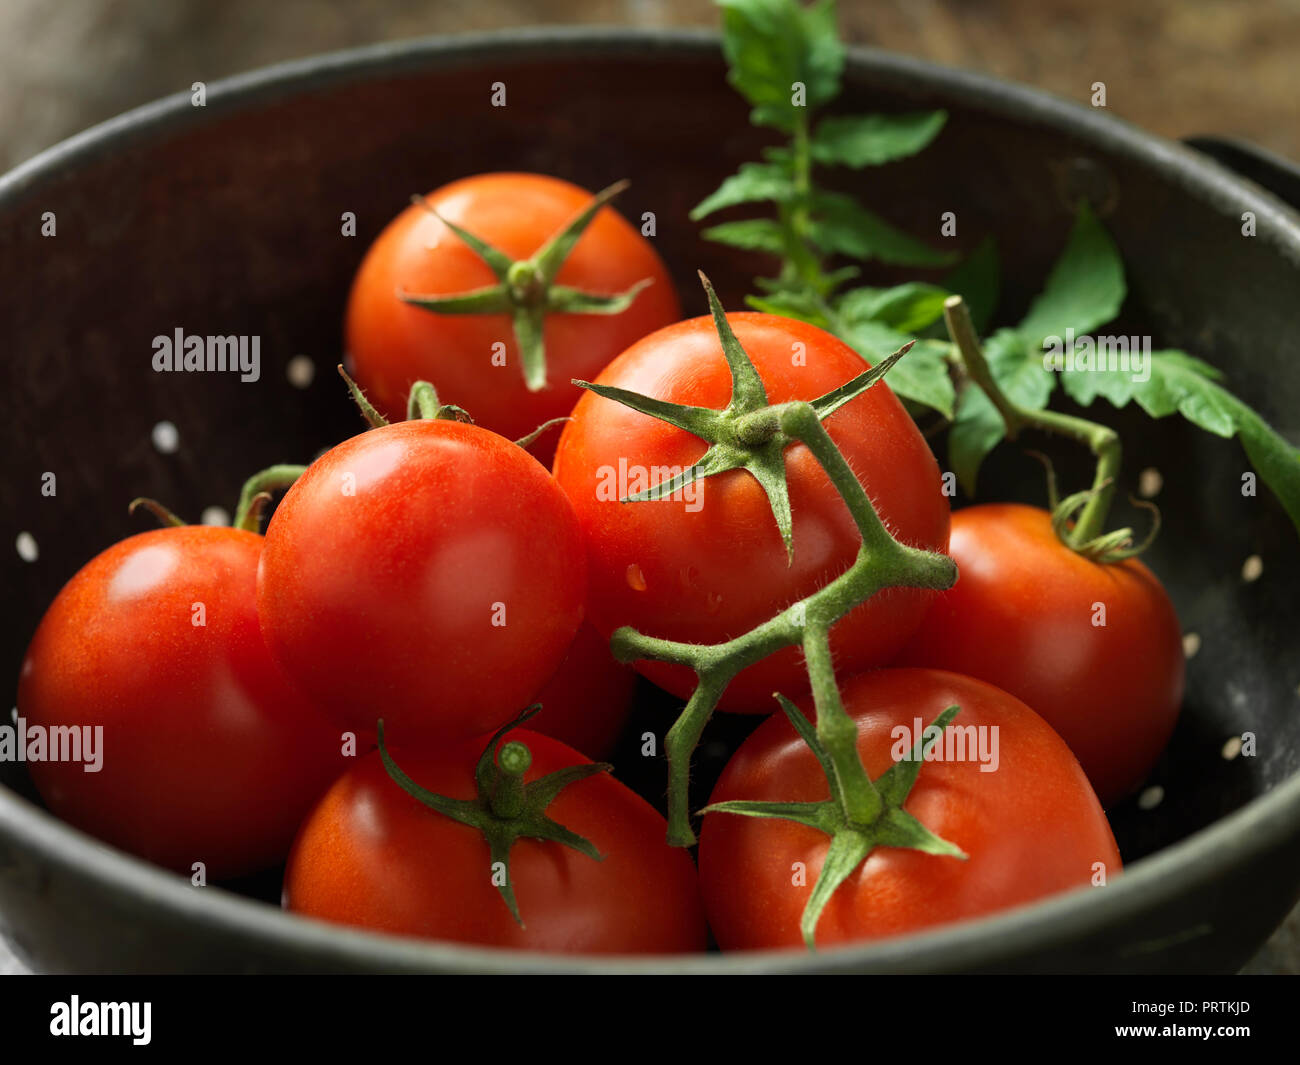 Vine tomatoes Stock Photo